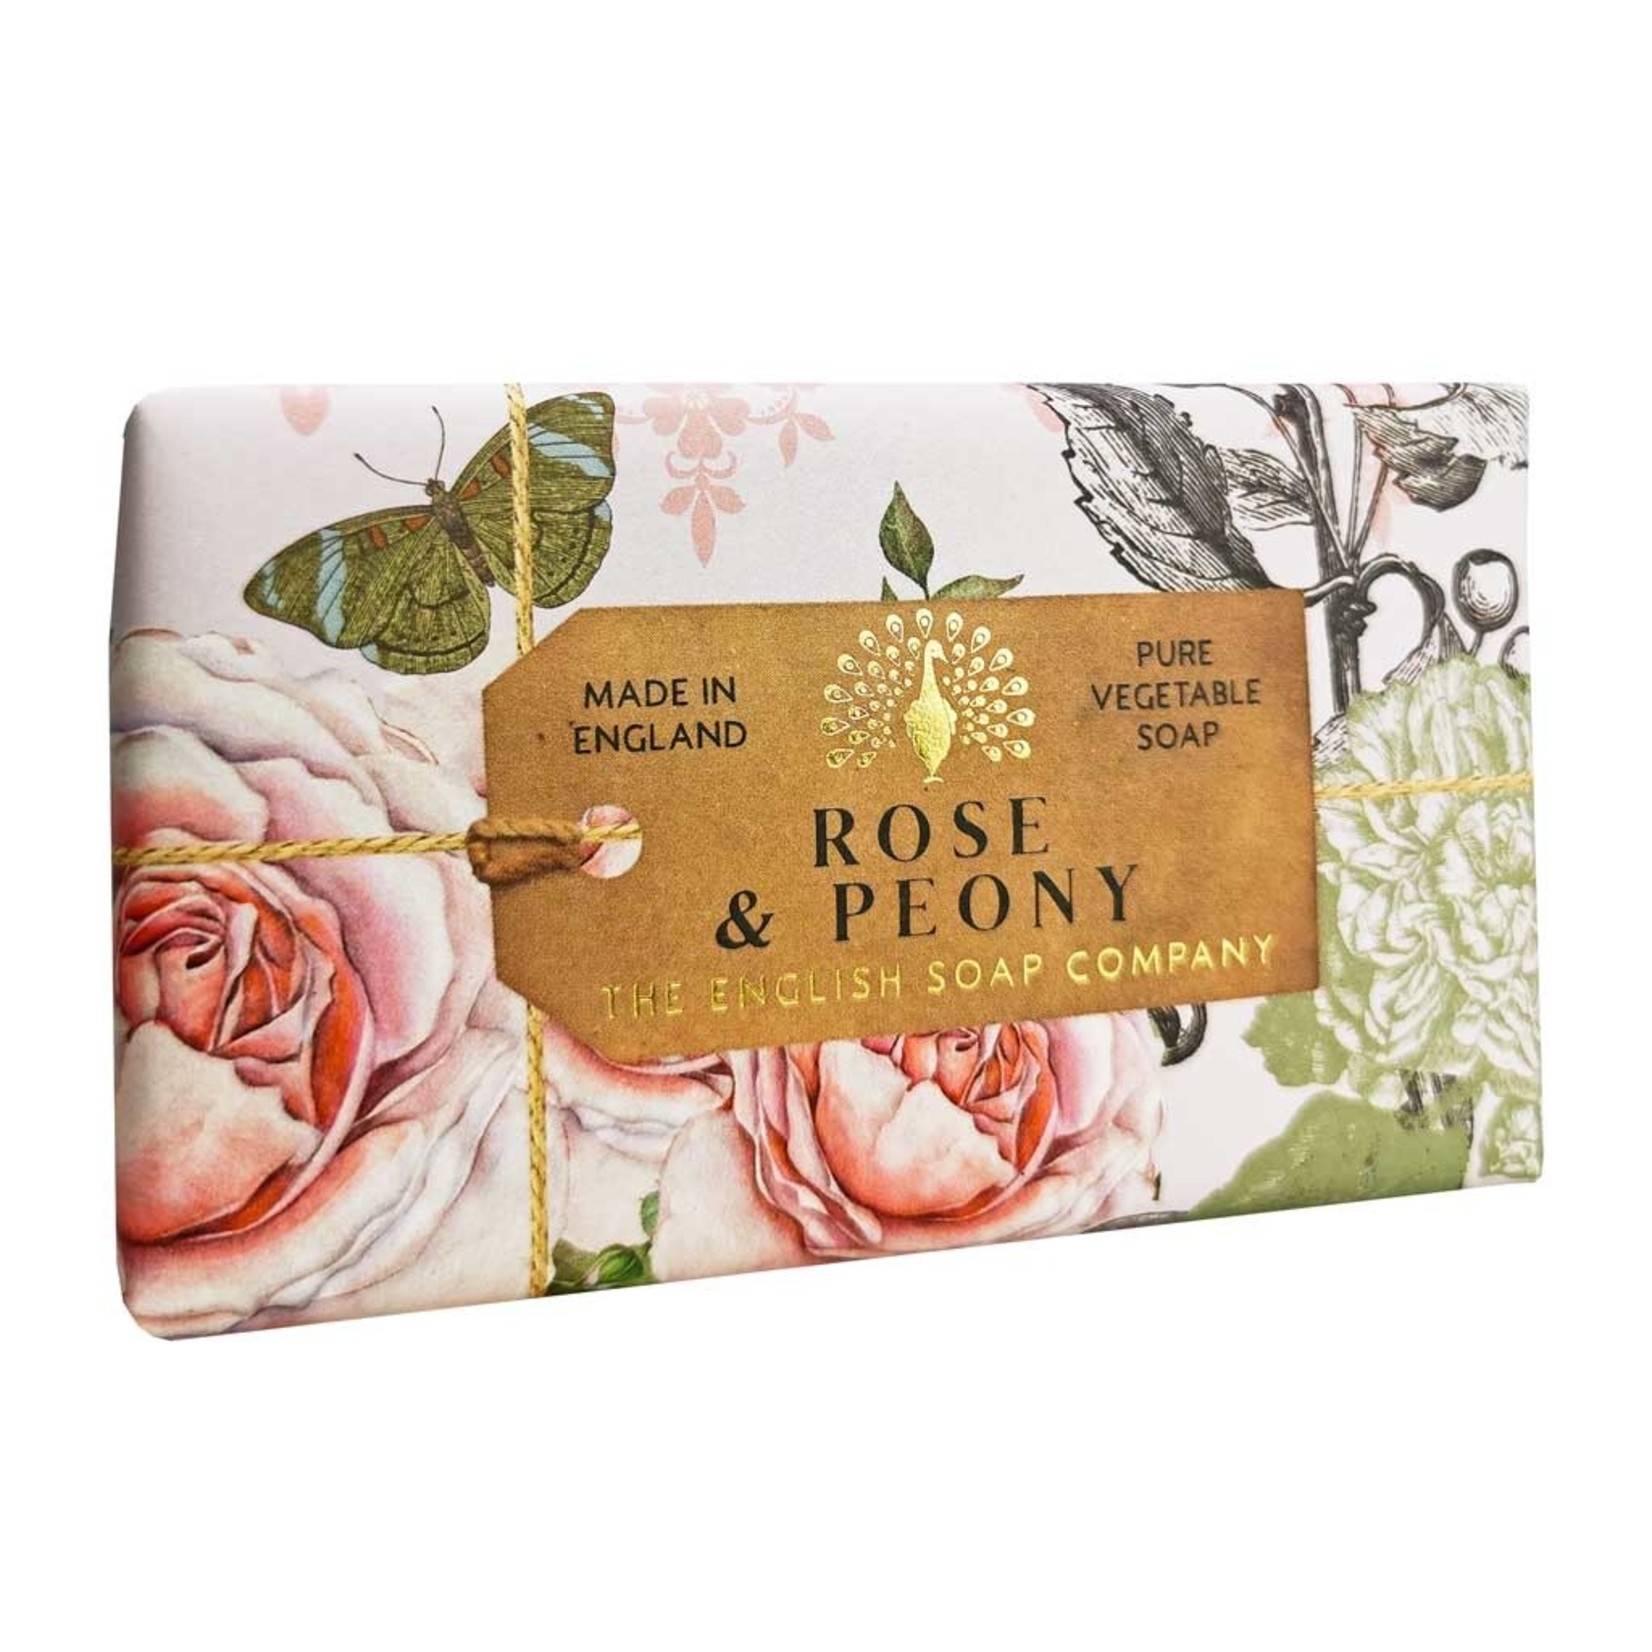 English Soap Company Rose and Peony 190g Soap Bar